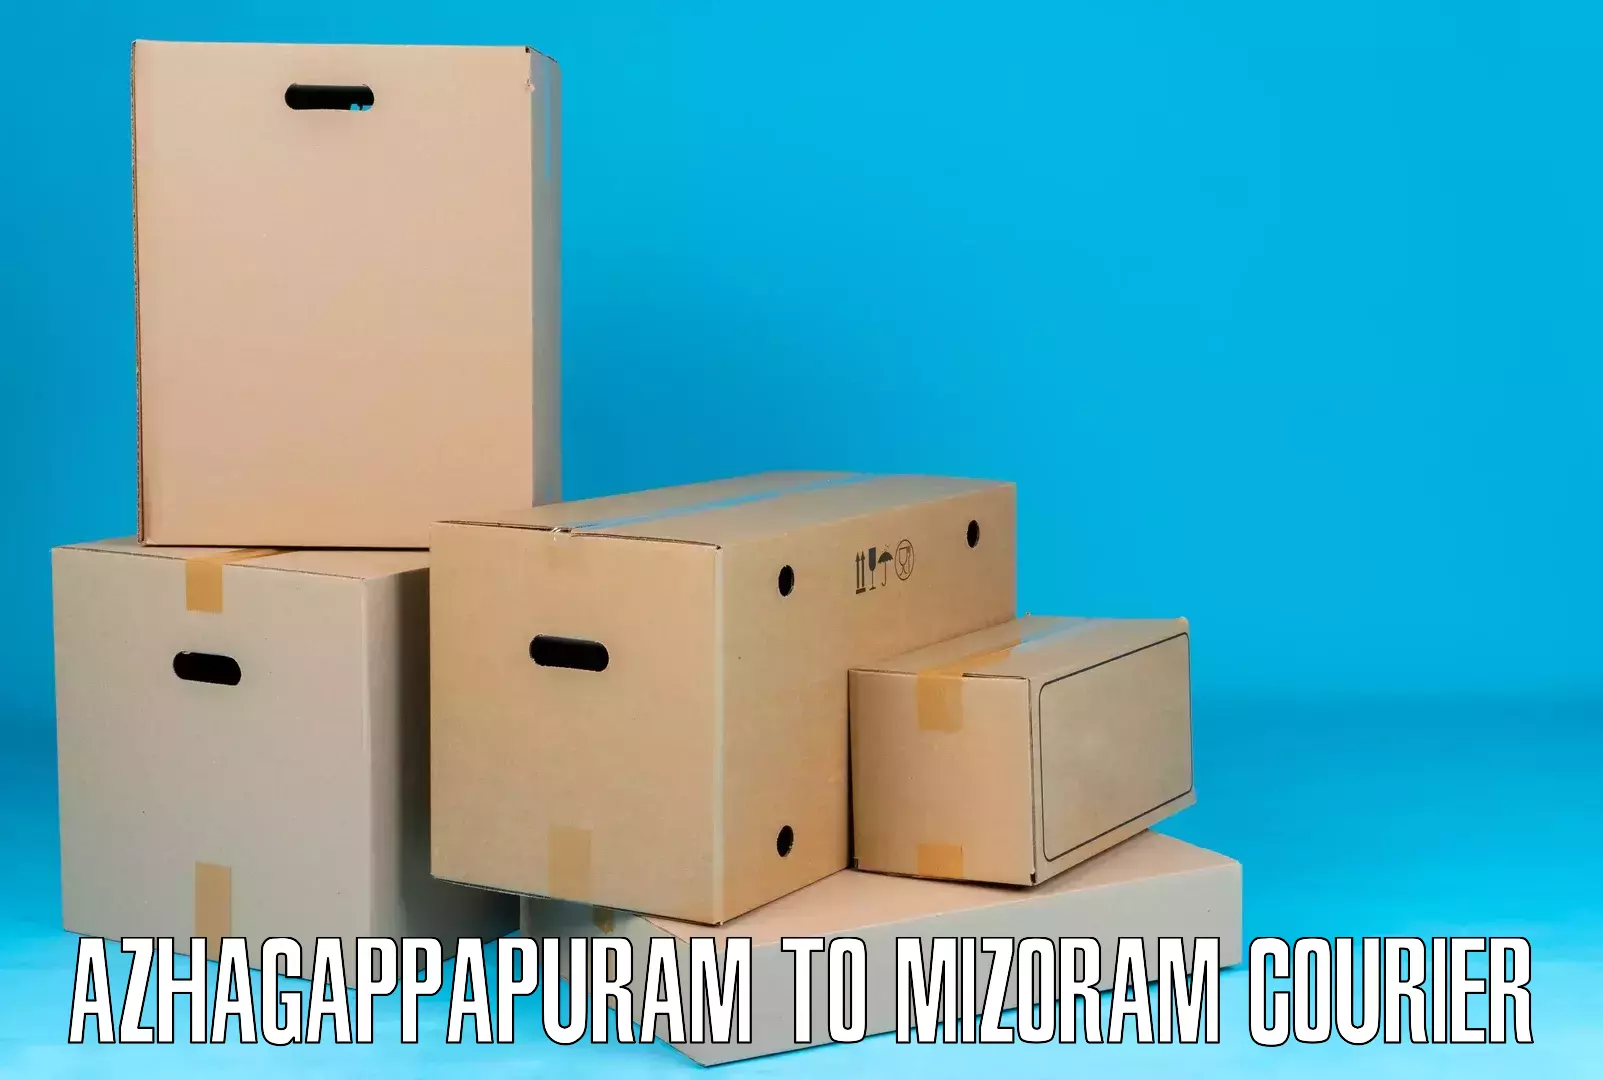 Expedited shipping methods Azhagappapuram to Aizawl